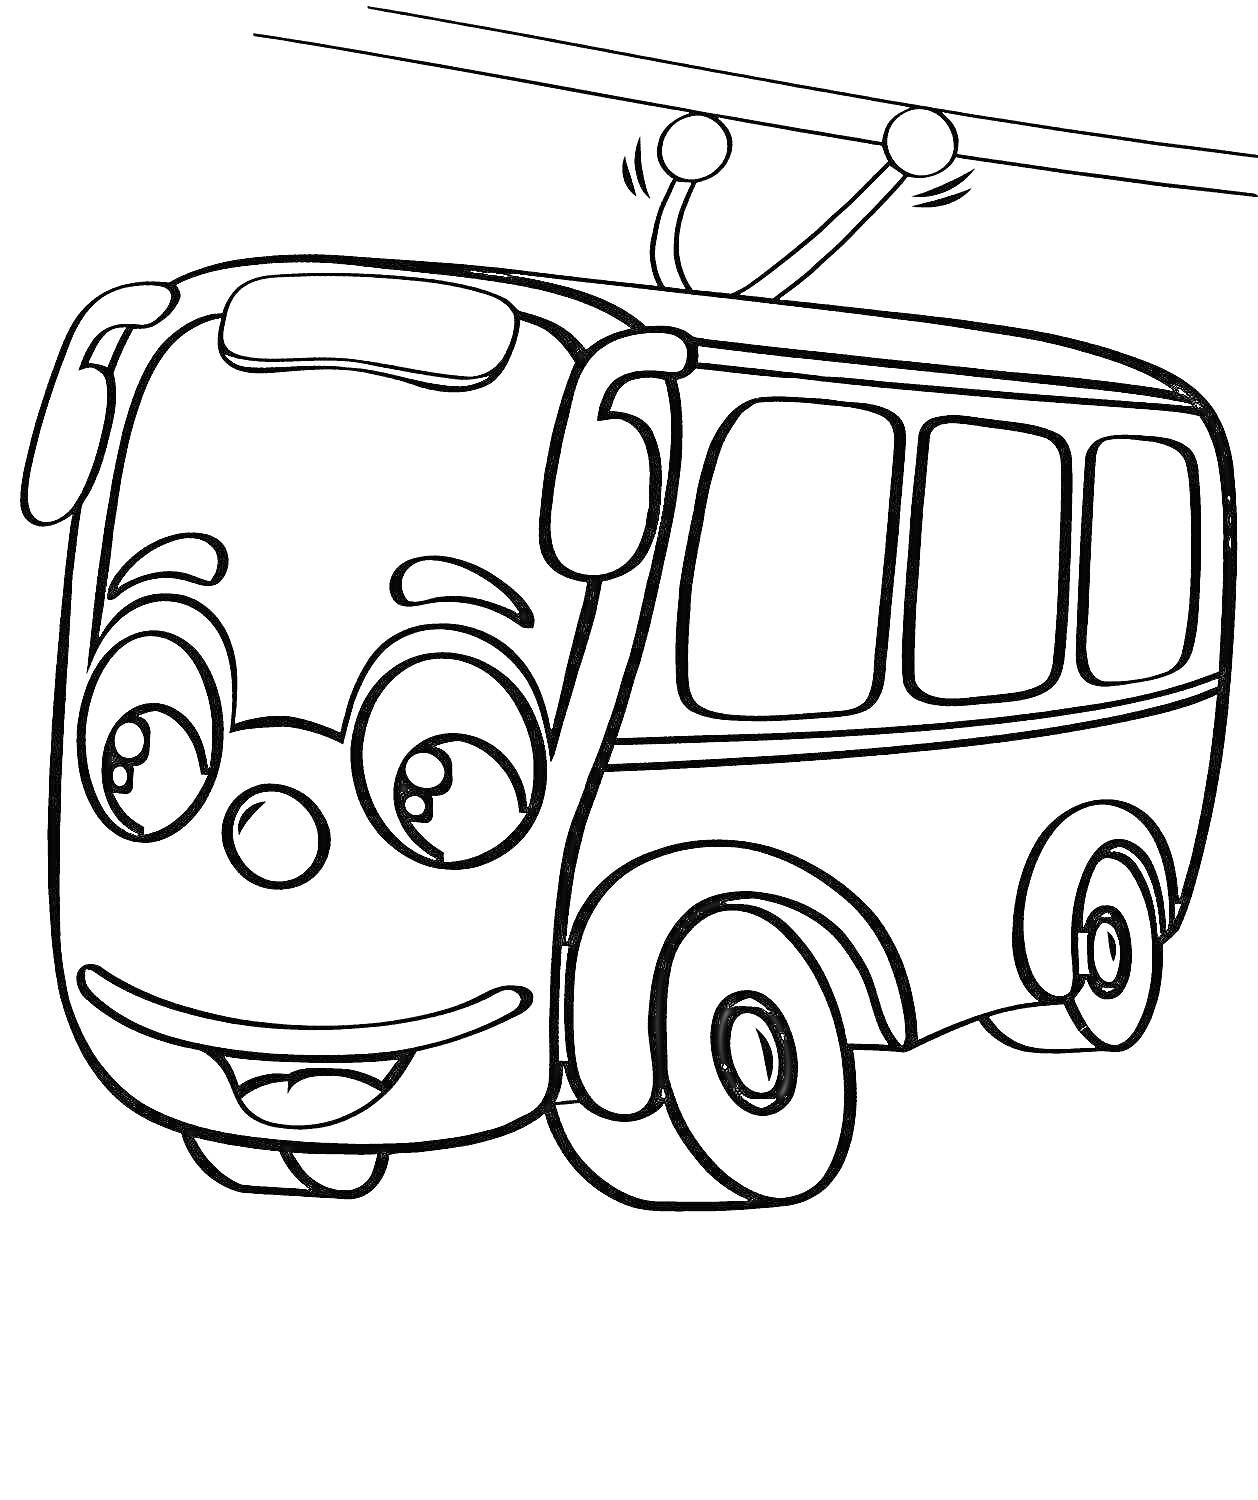 Троллейбус с глазами и улыбкой, подключенный к проводам